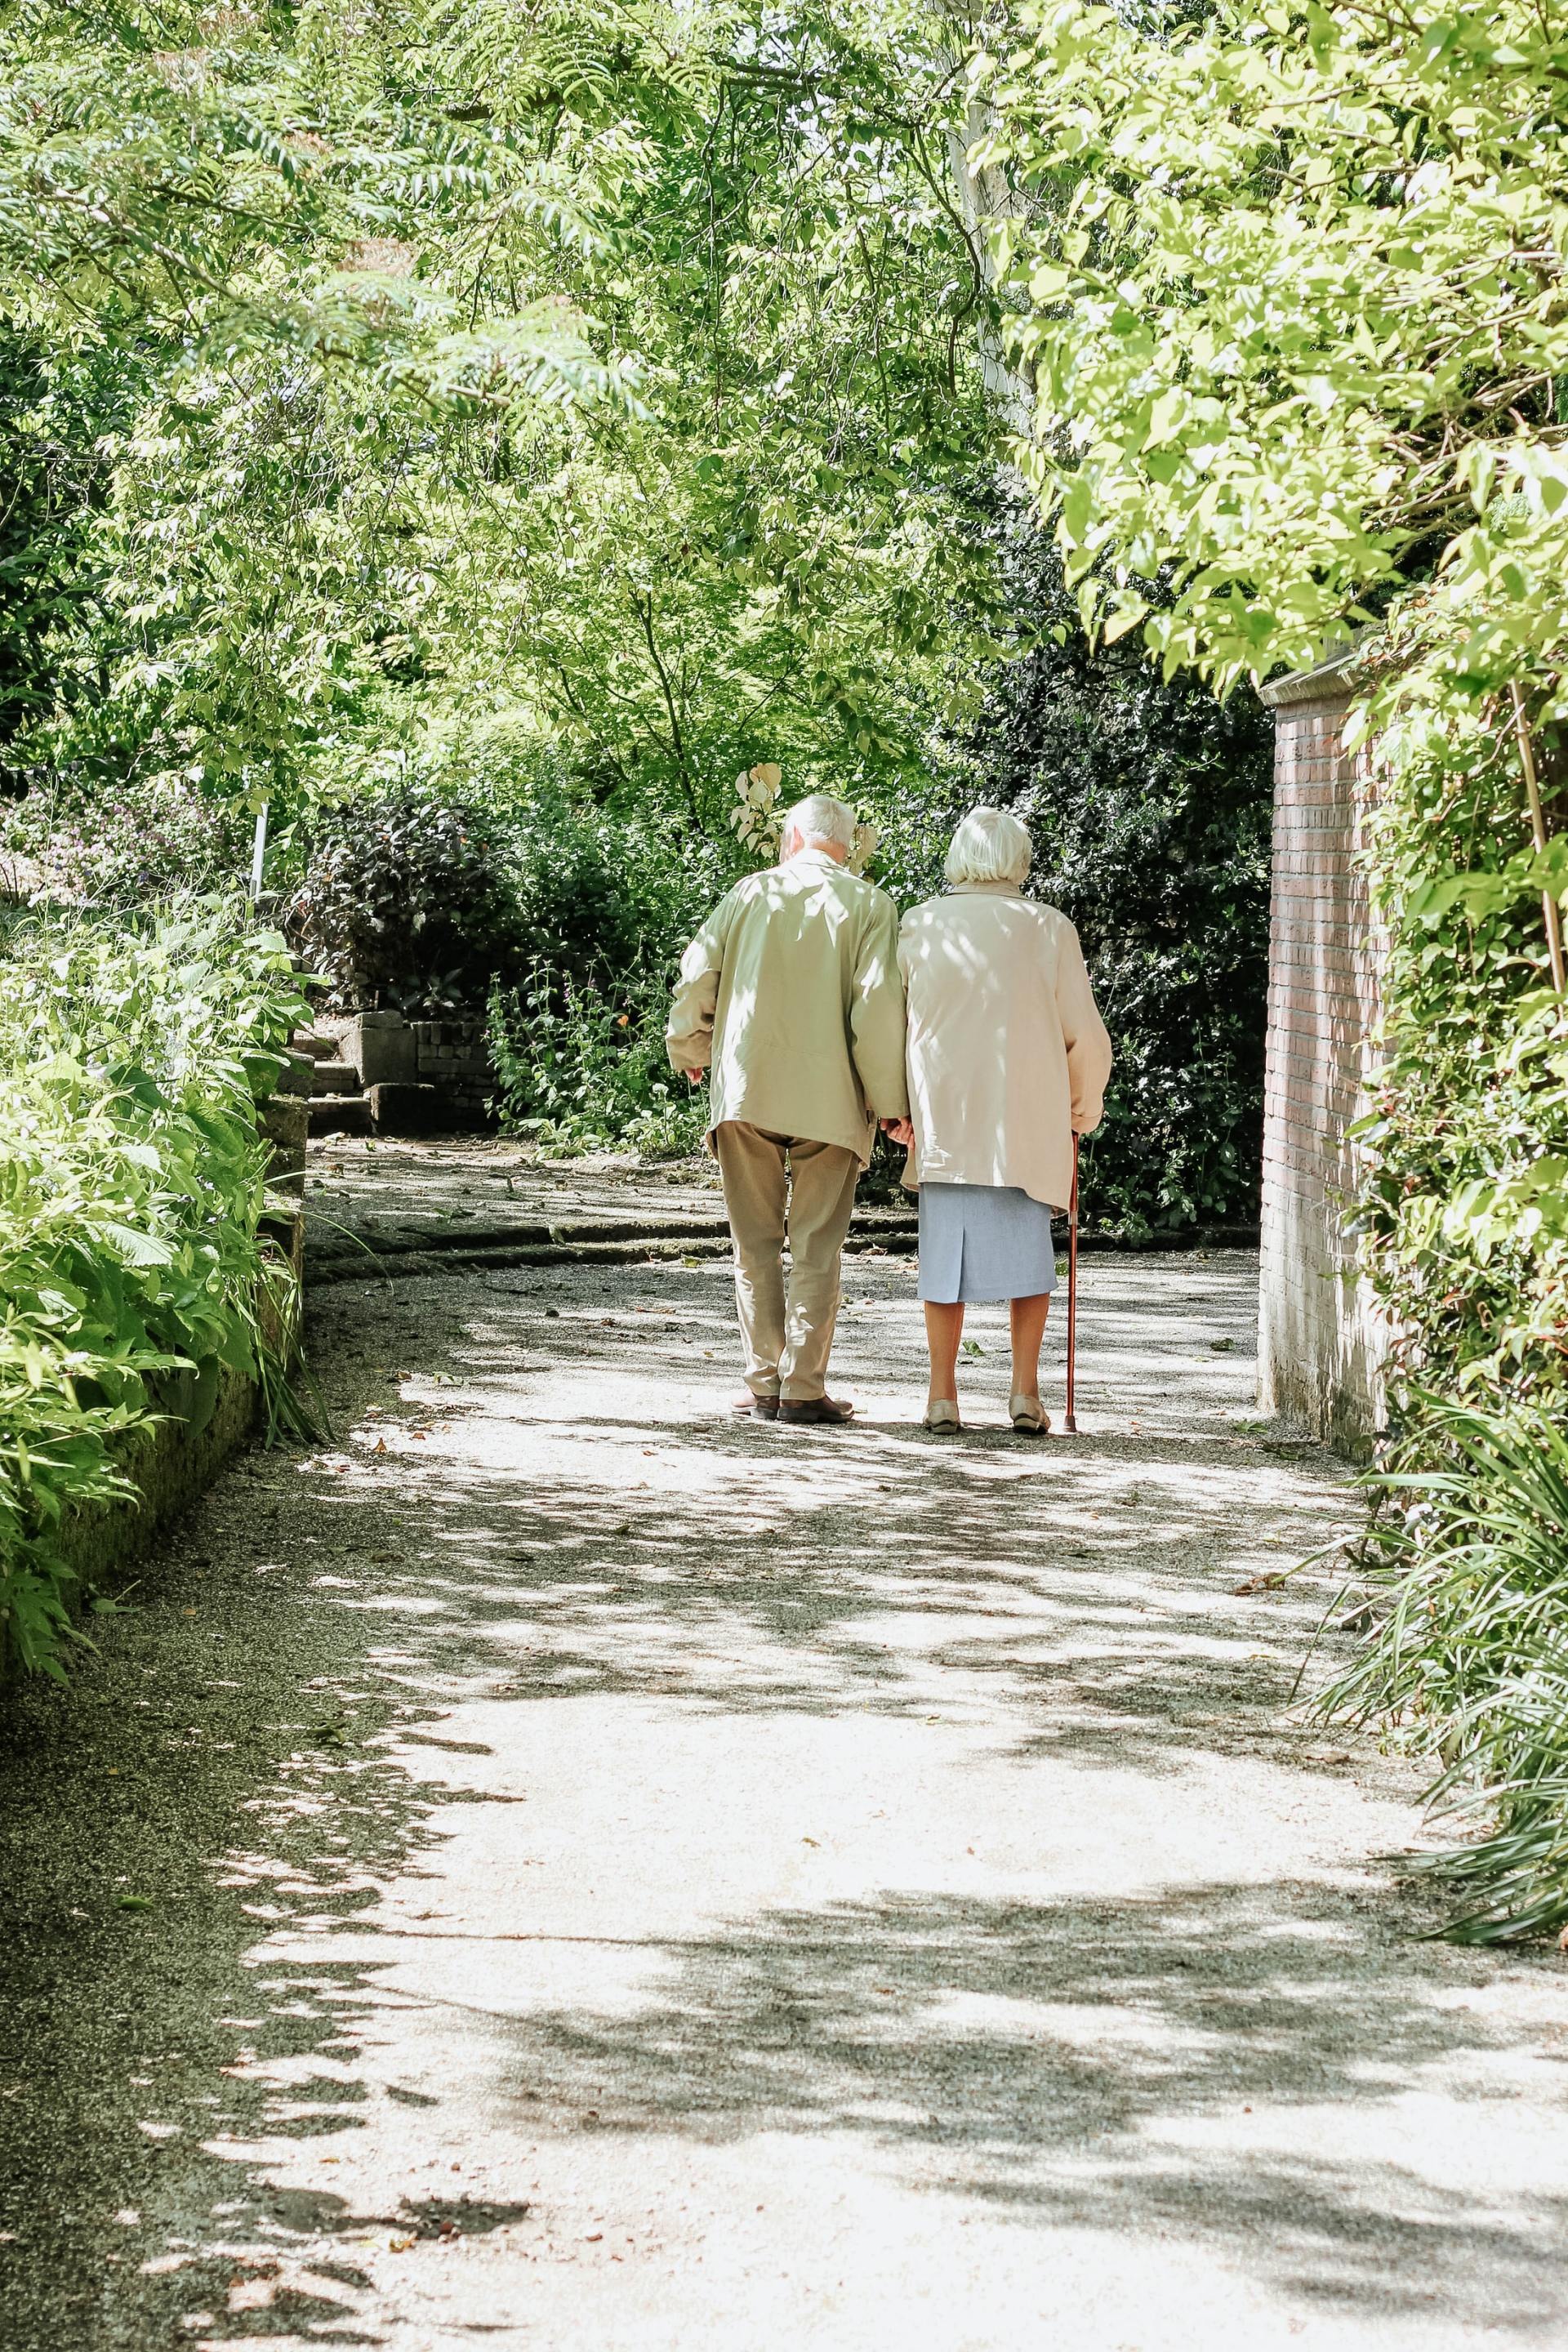 Pflegefachkraft unterstützt alte Person beim Gehen mit der Gehhilfe